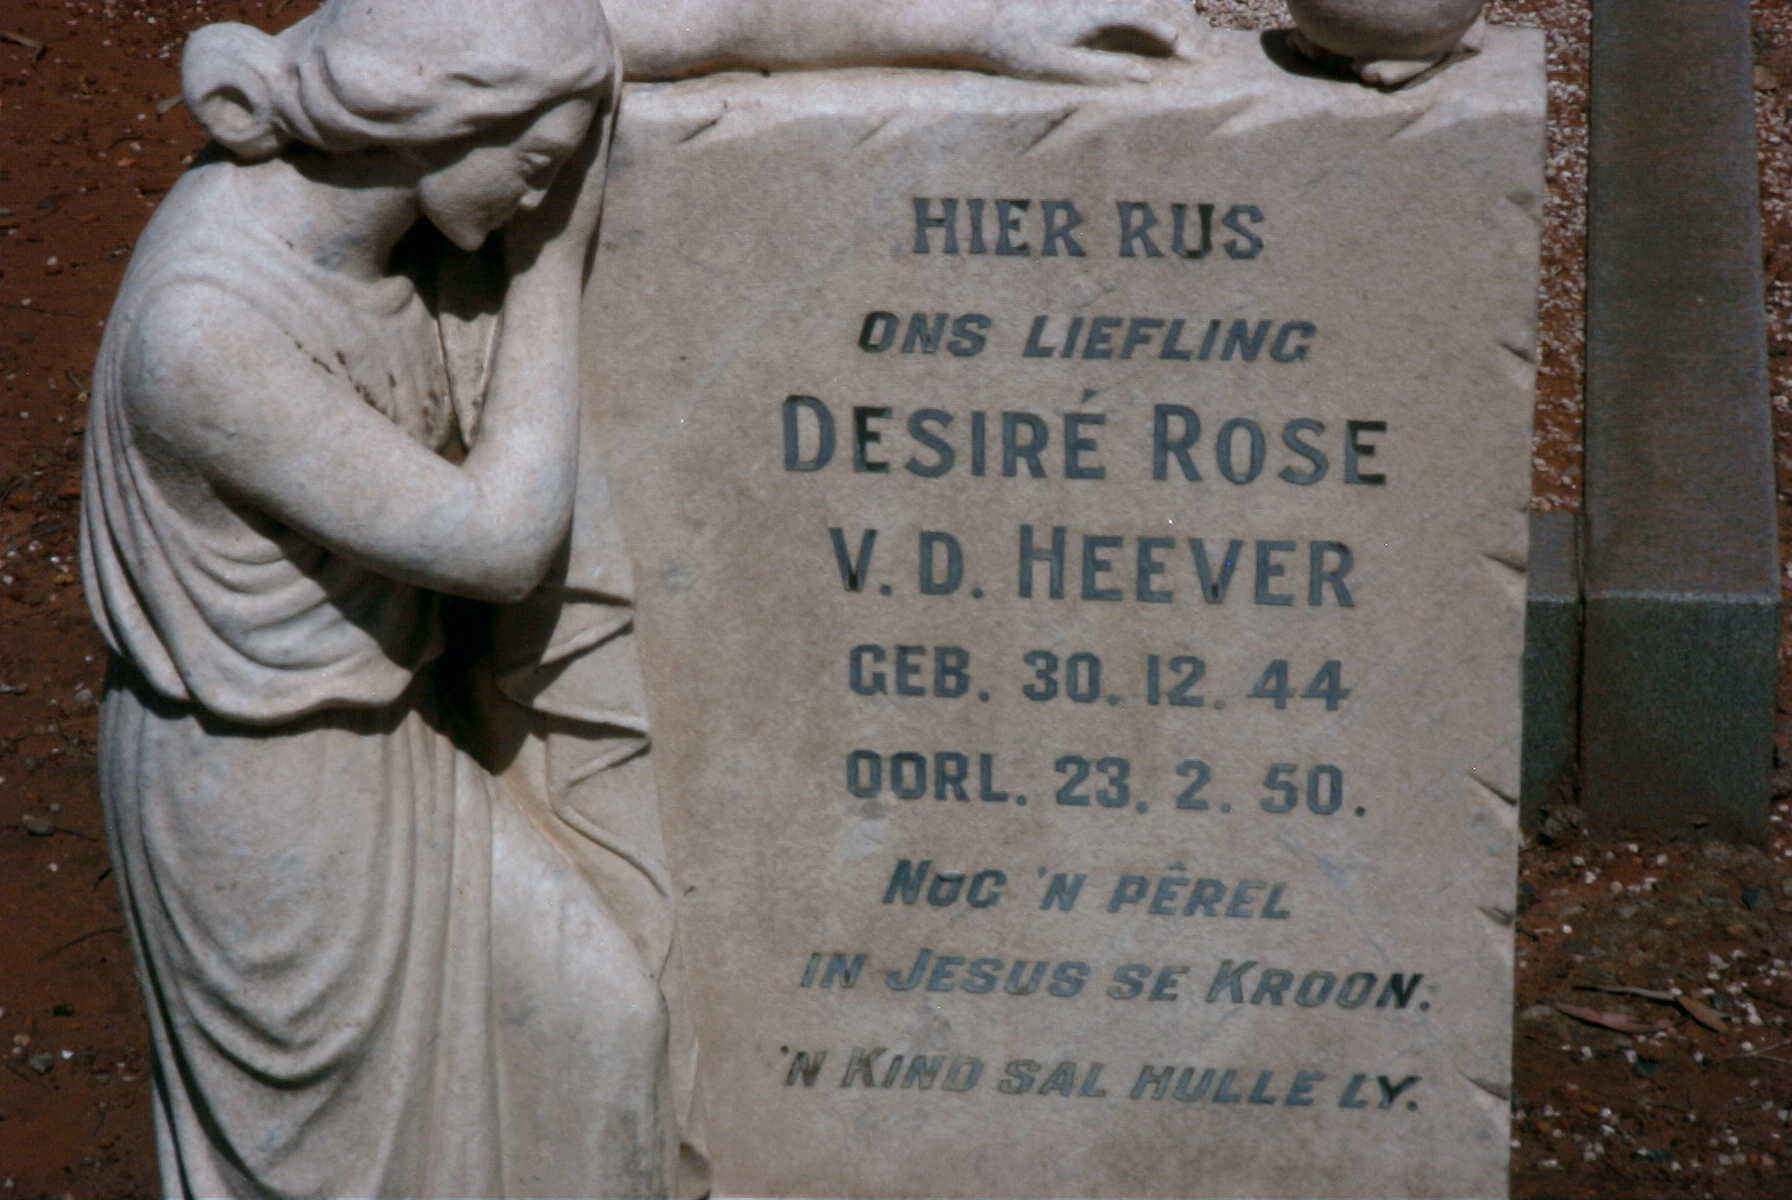 HEEVER Desiré Rose, v.d. 1944-1950